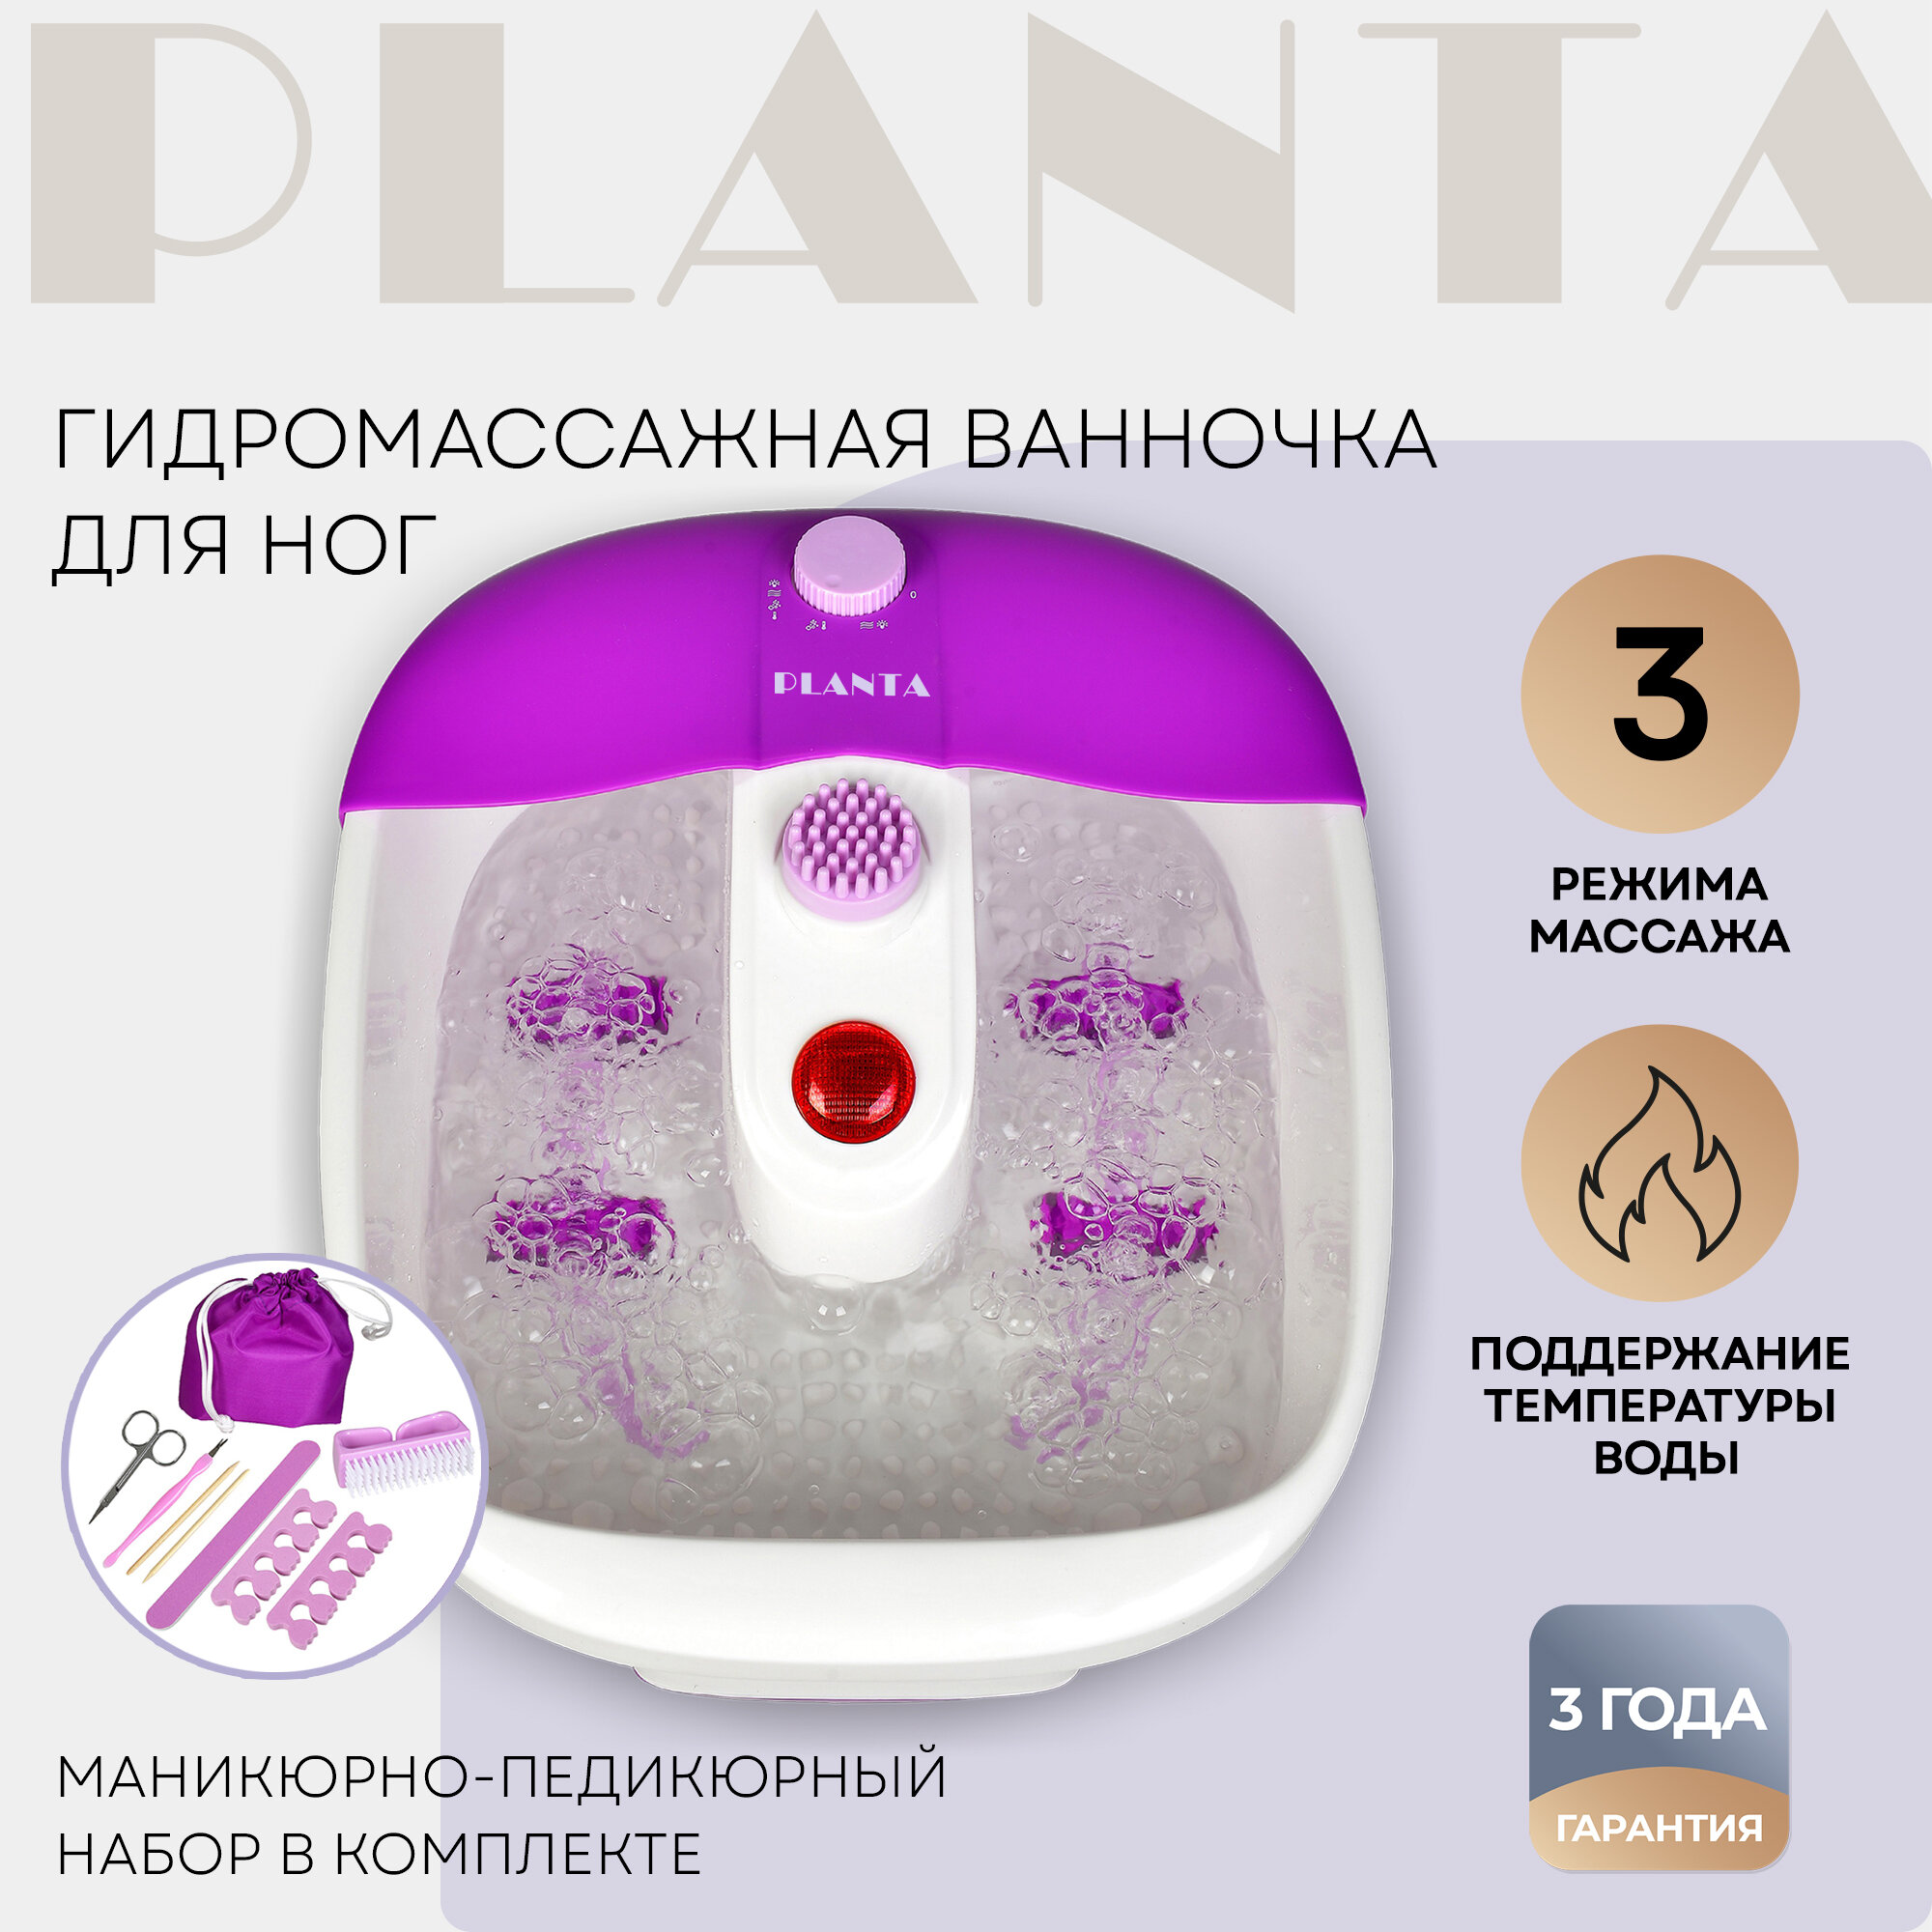 PLANTA Гидромассажная ванночка MFS-200V Spa Salon, 3 режима работы, маникюрно-педикюрный набор в комплекте